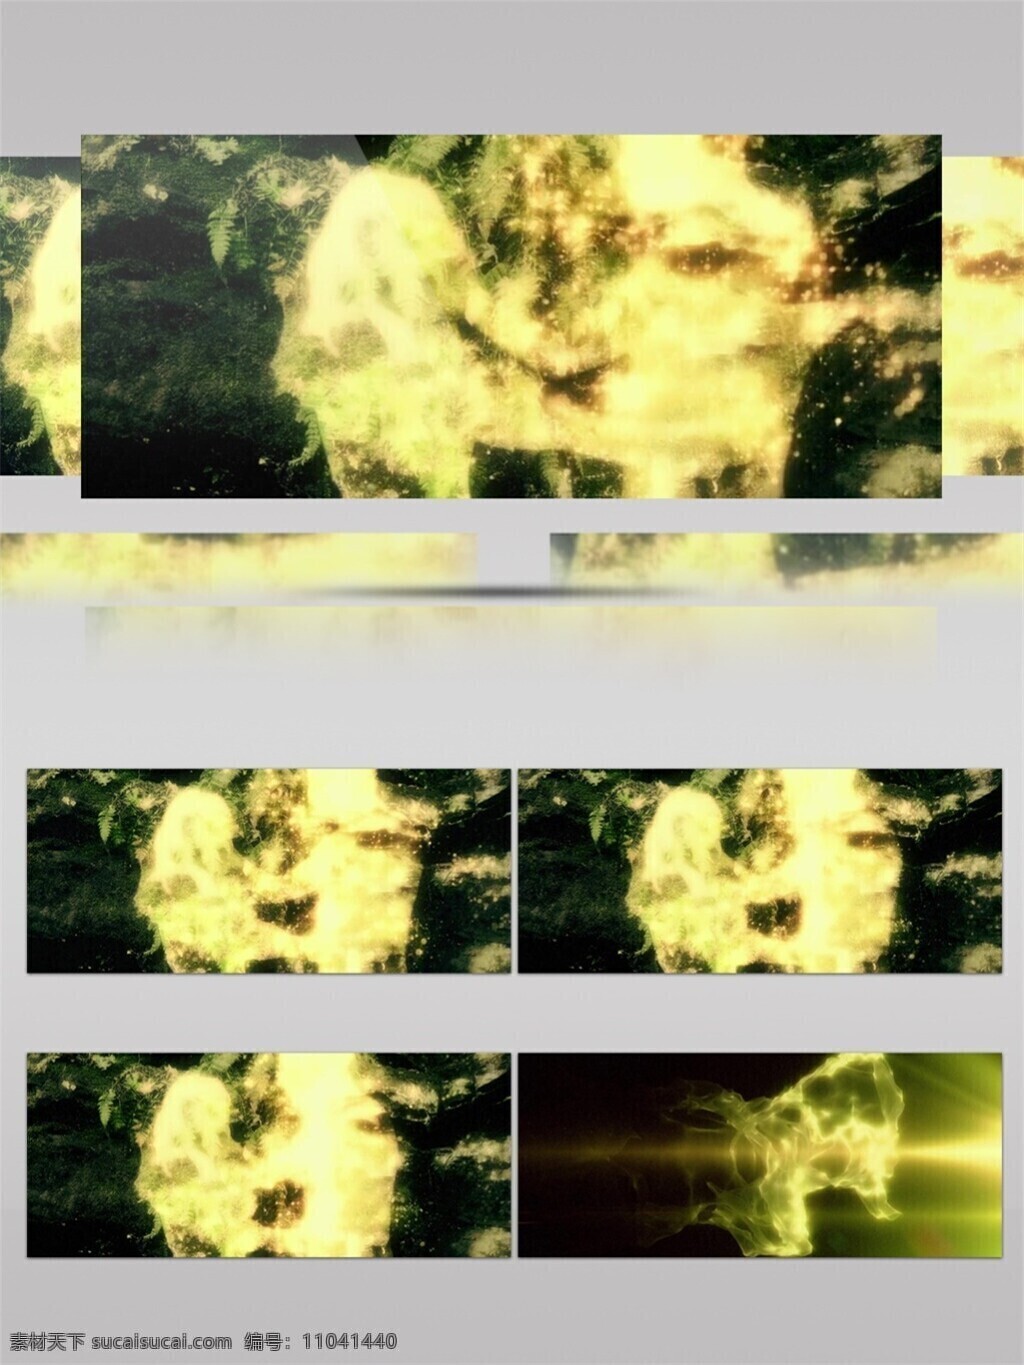 光斑散射 光束 激光 金色 视觉享受 手机壁纸 星际 光雾 视频